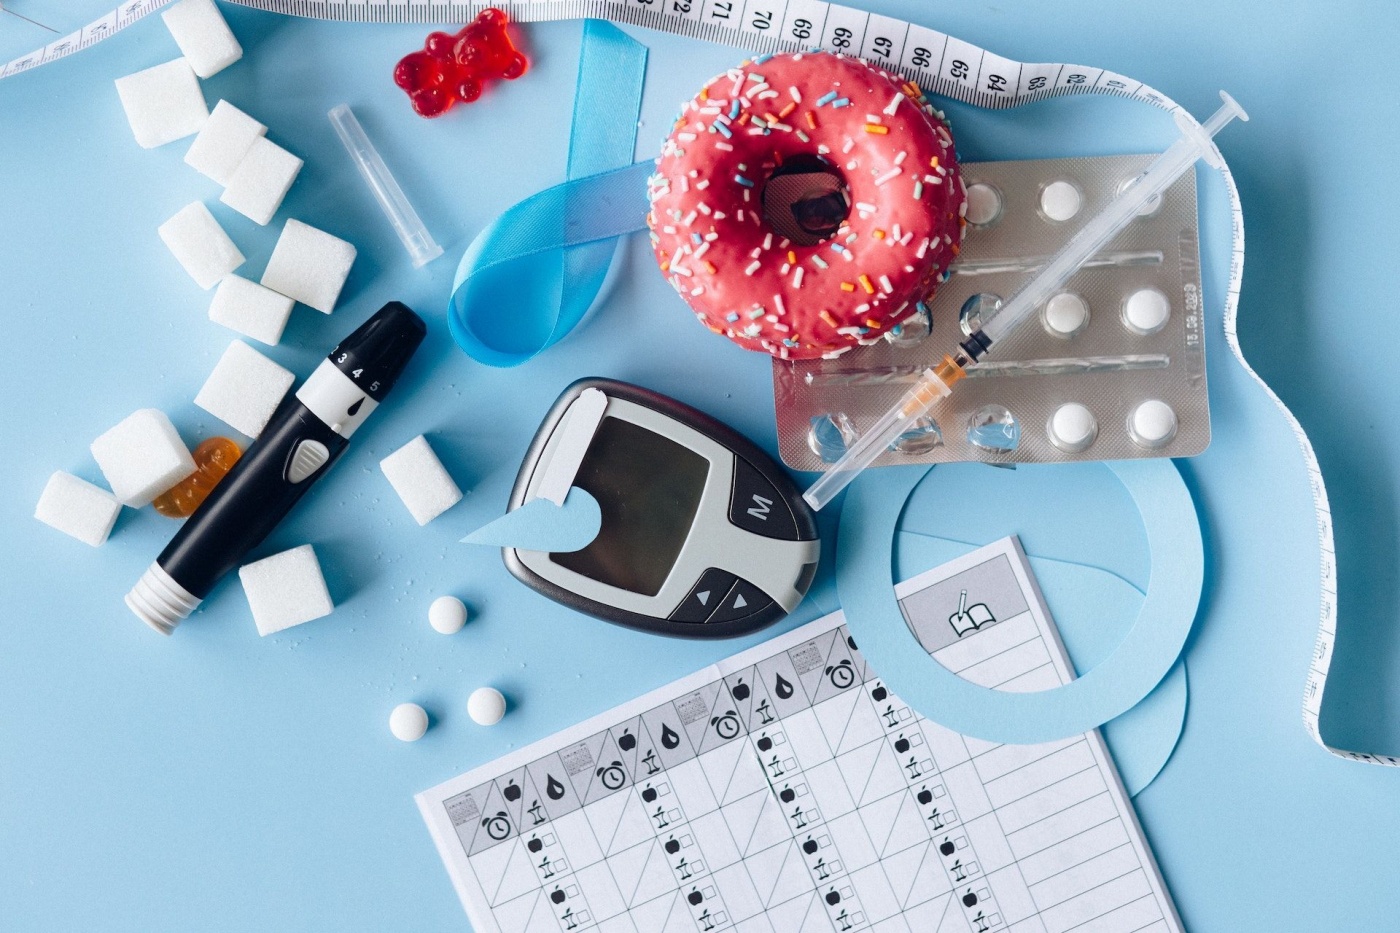 К 2050 году 1,3 миллиарда людей во всем мире будут болеть диабетом - ученые